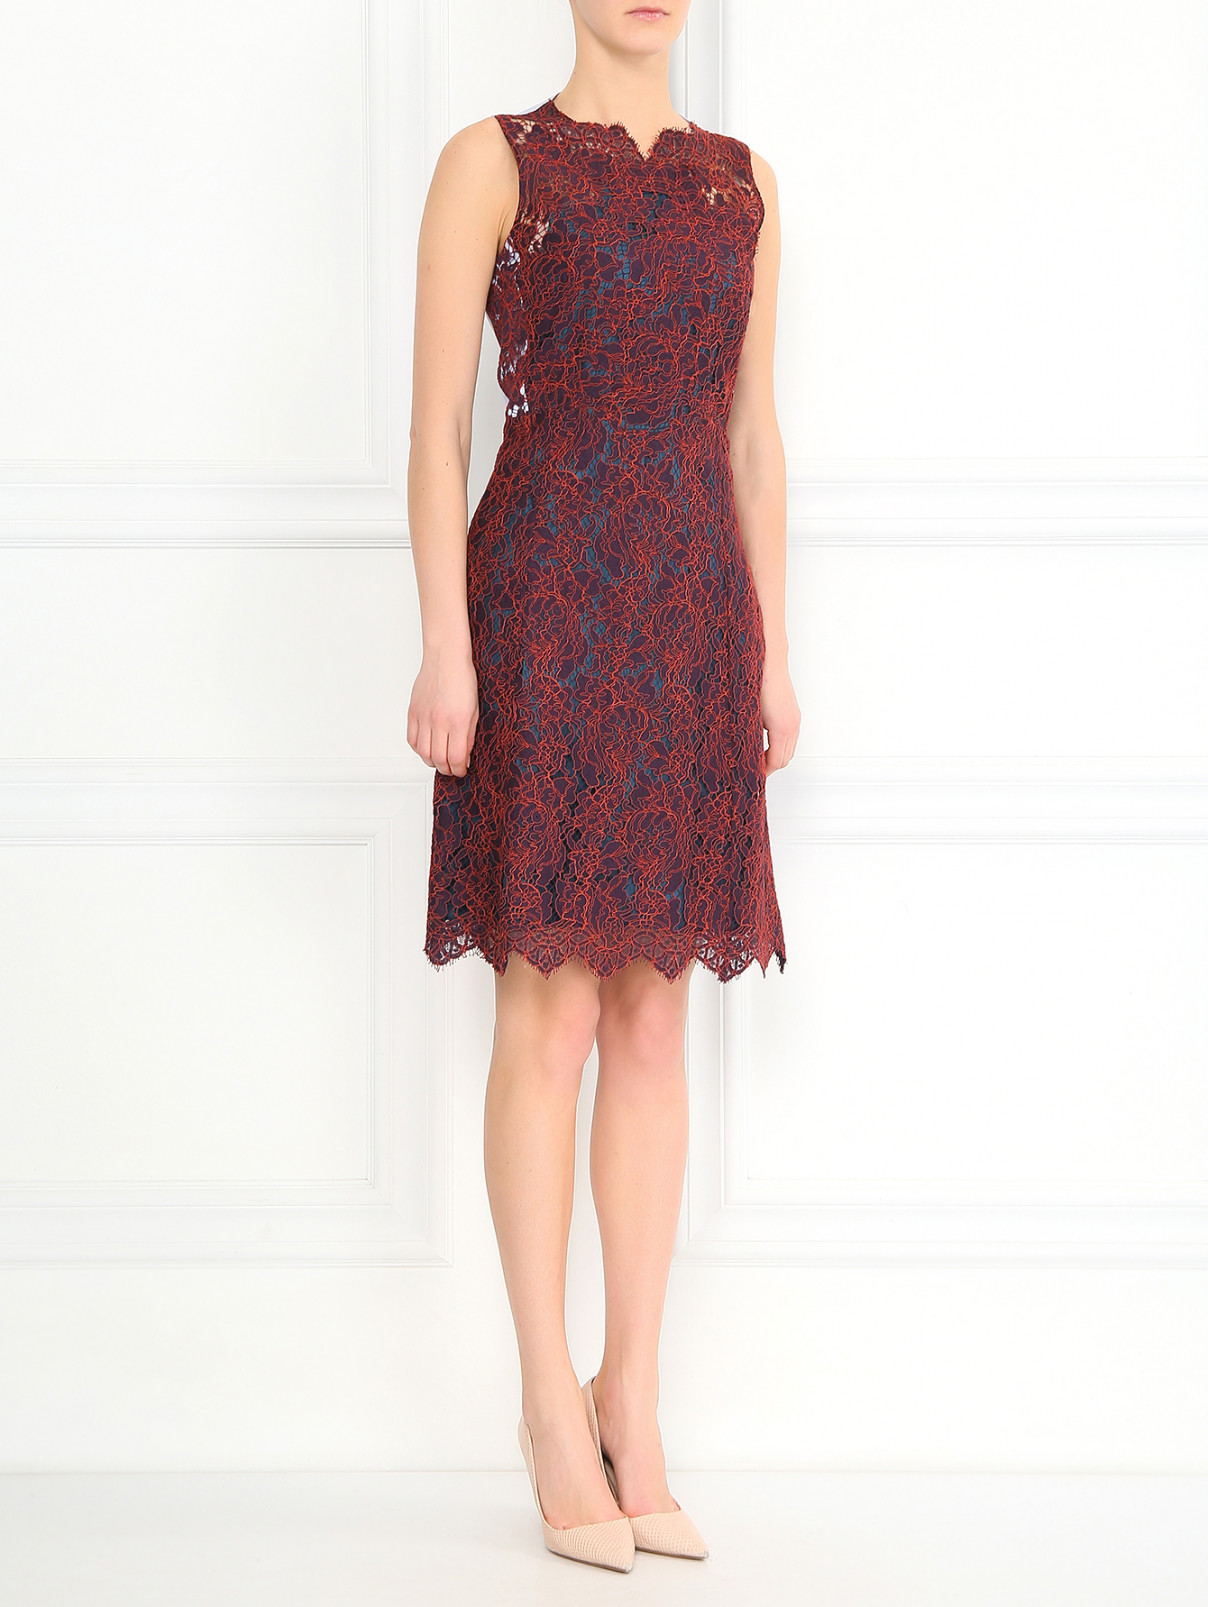 Платье из кружевного полотна и контрастной вставкой Carven  –  Модель Общий вид  – Цвет:  Красный